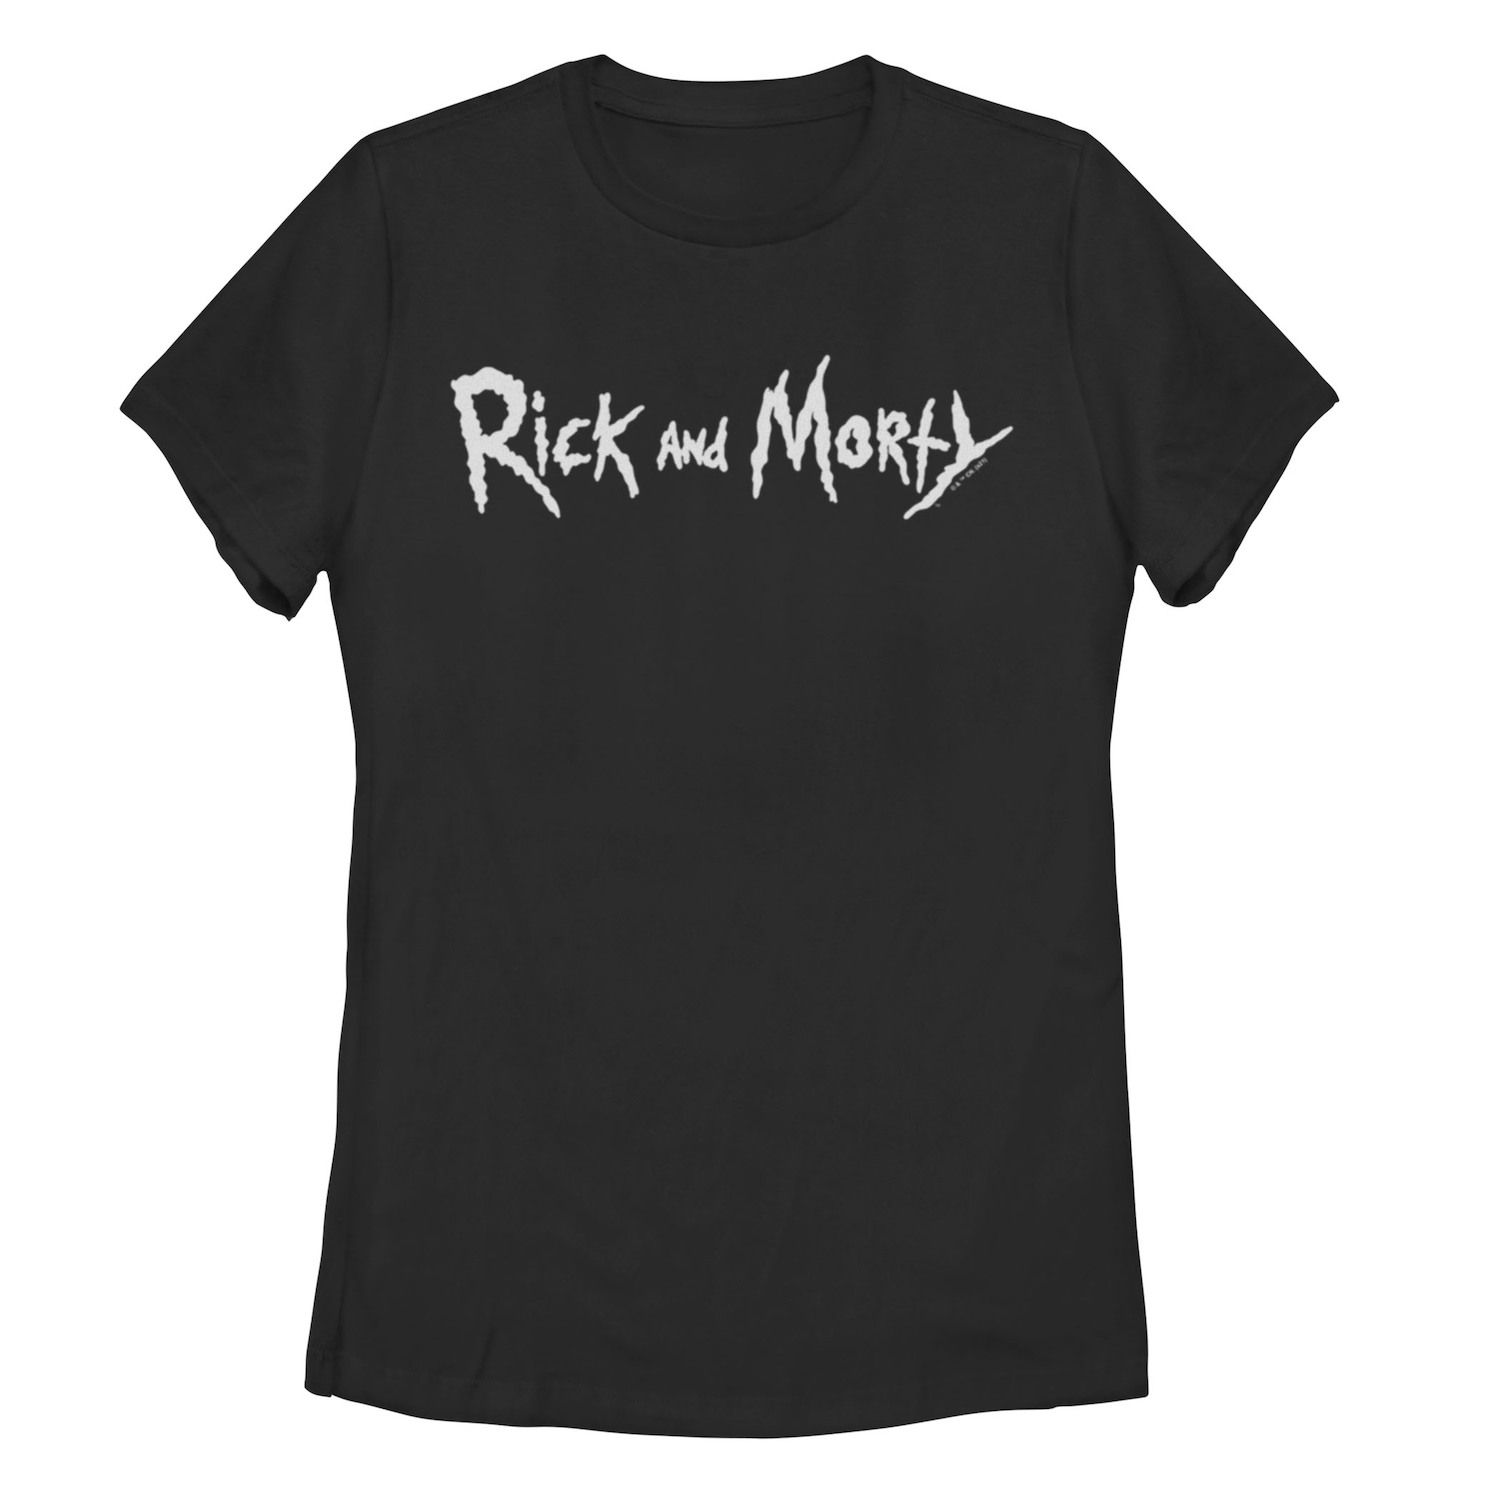 Простая черная футболка с текстовым рисунком «Рик и Морти» для юниоров Licensed Character